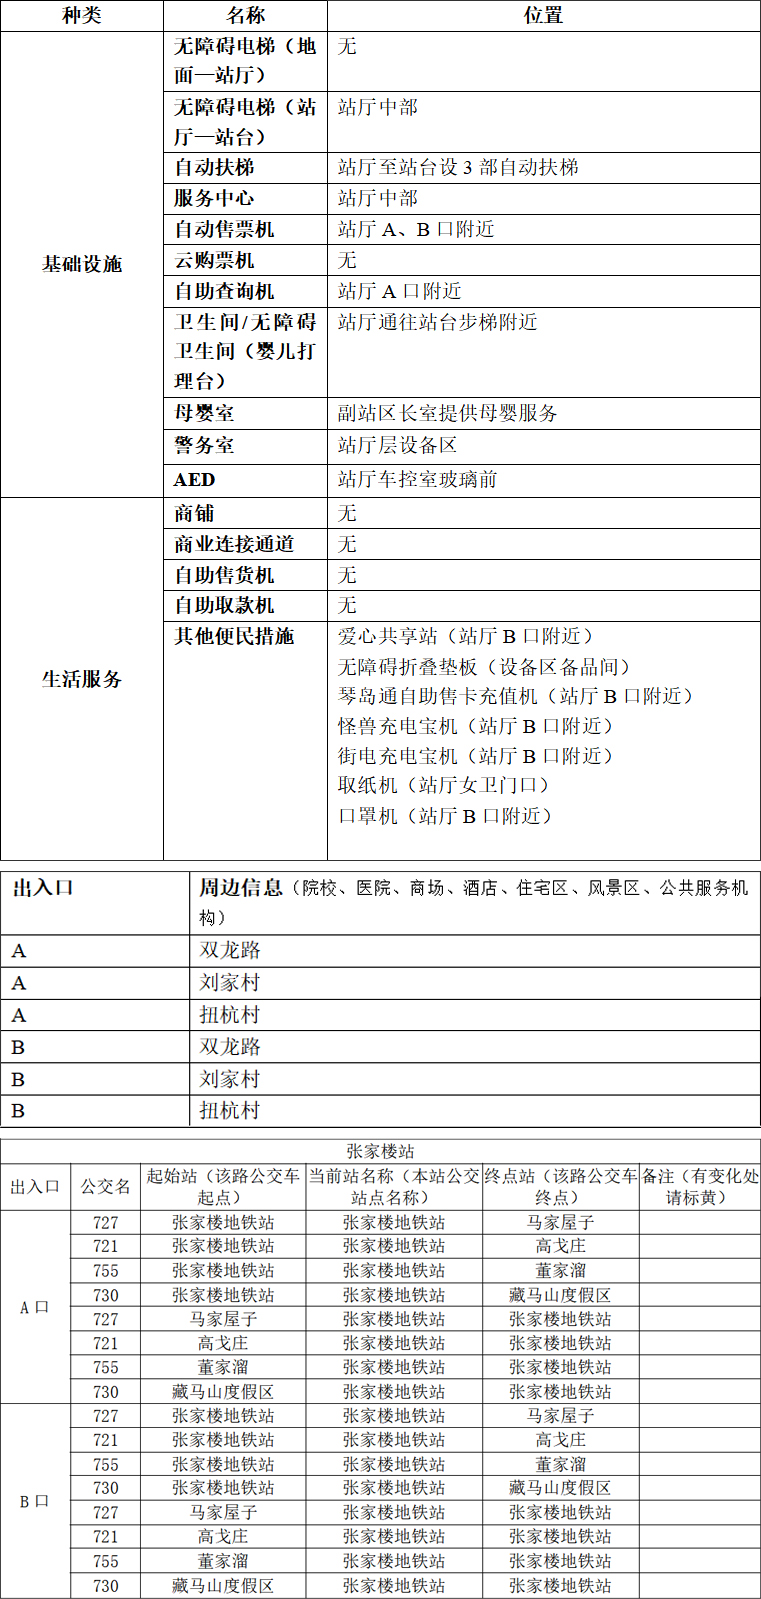 附件1：青岛地铁APP站点信息-张家楼站2023.03.22(2) 拷贝.jpg